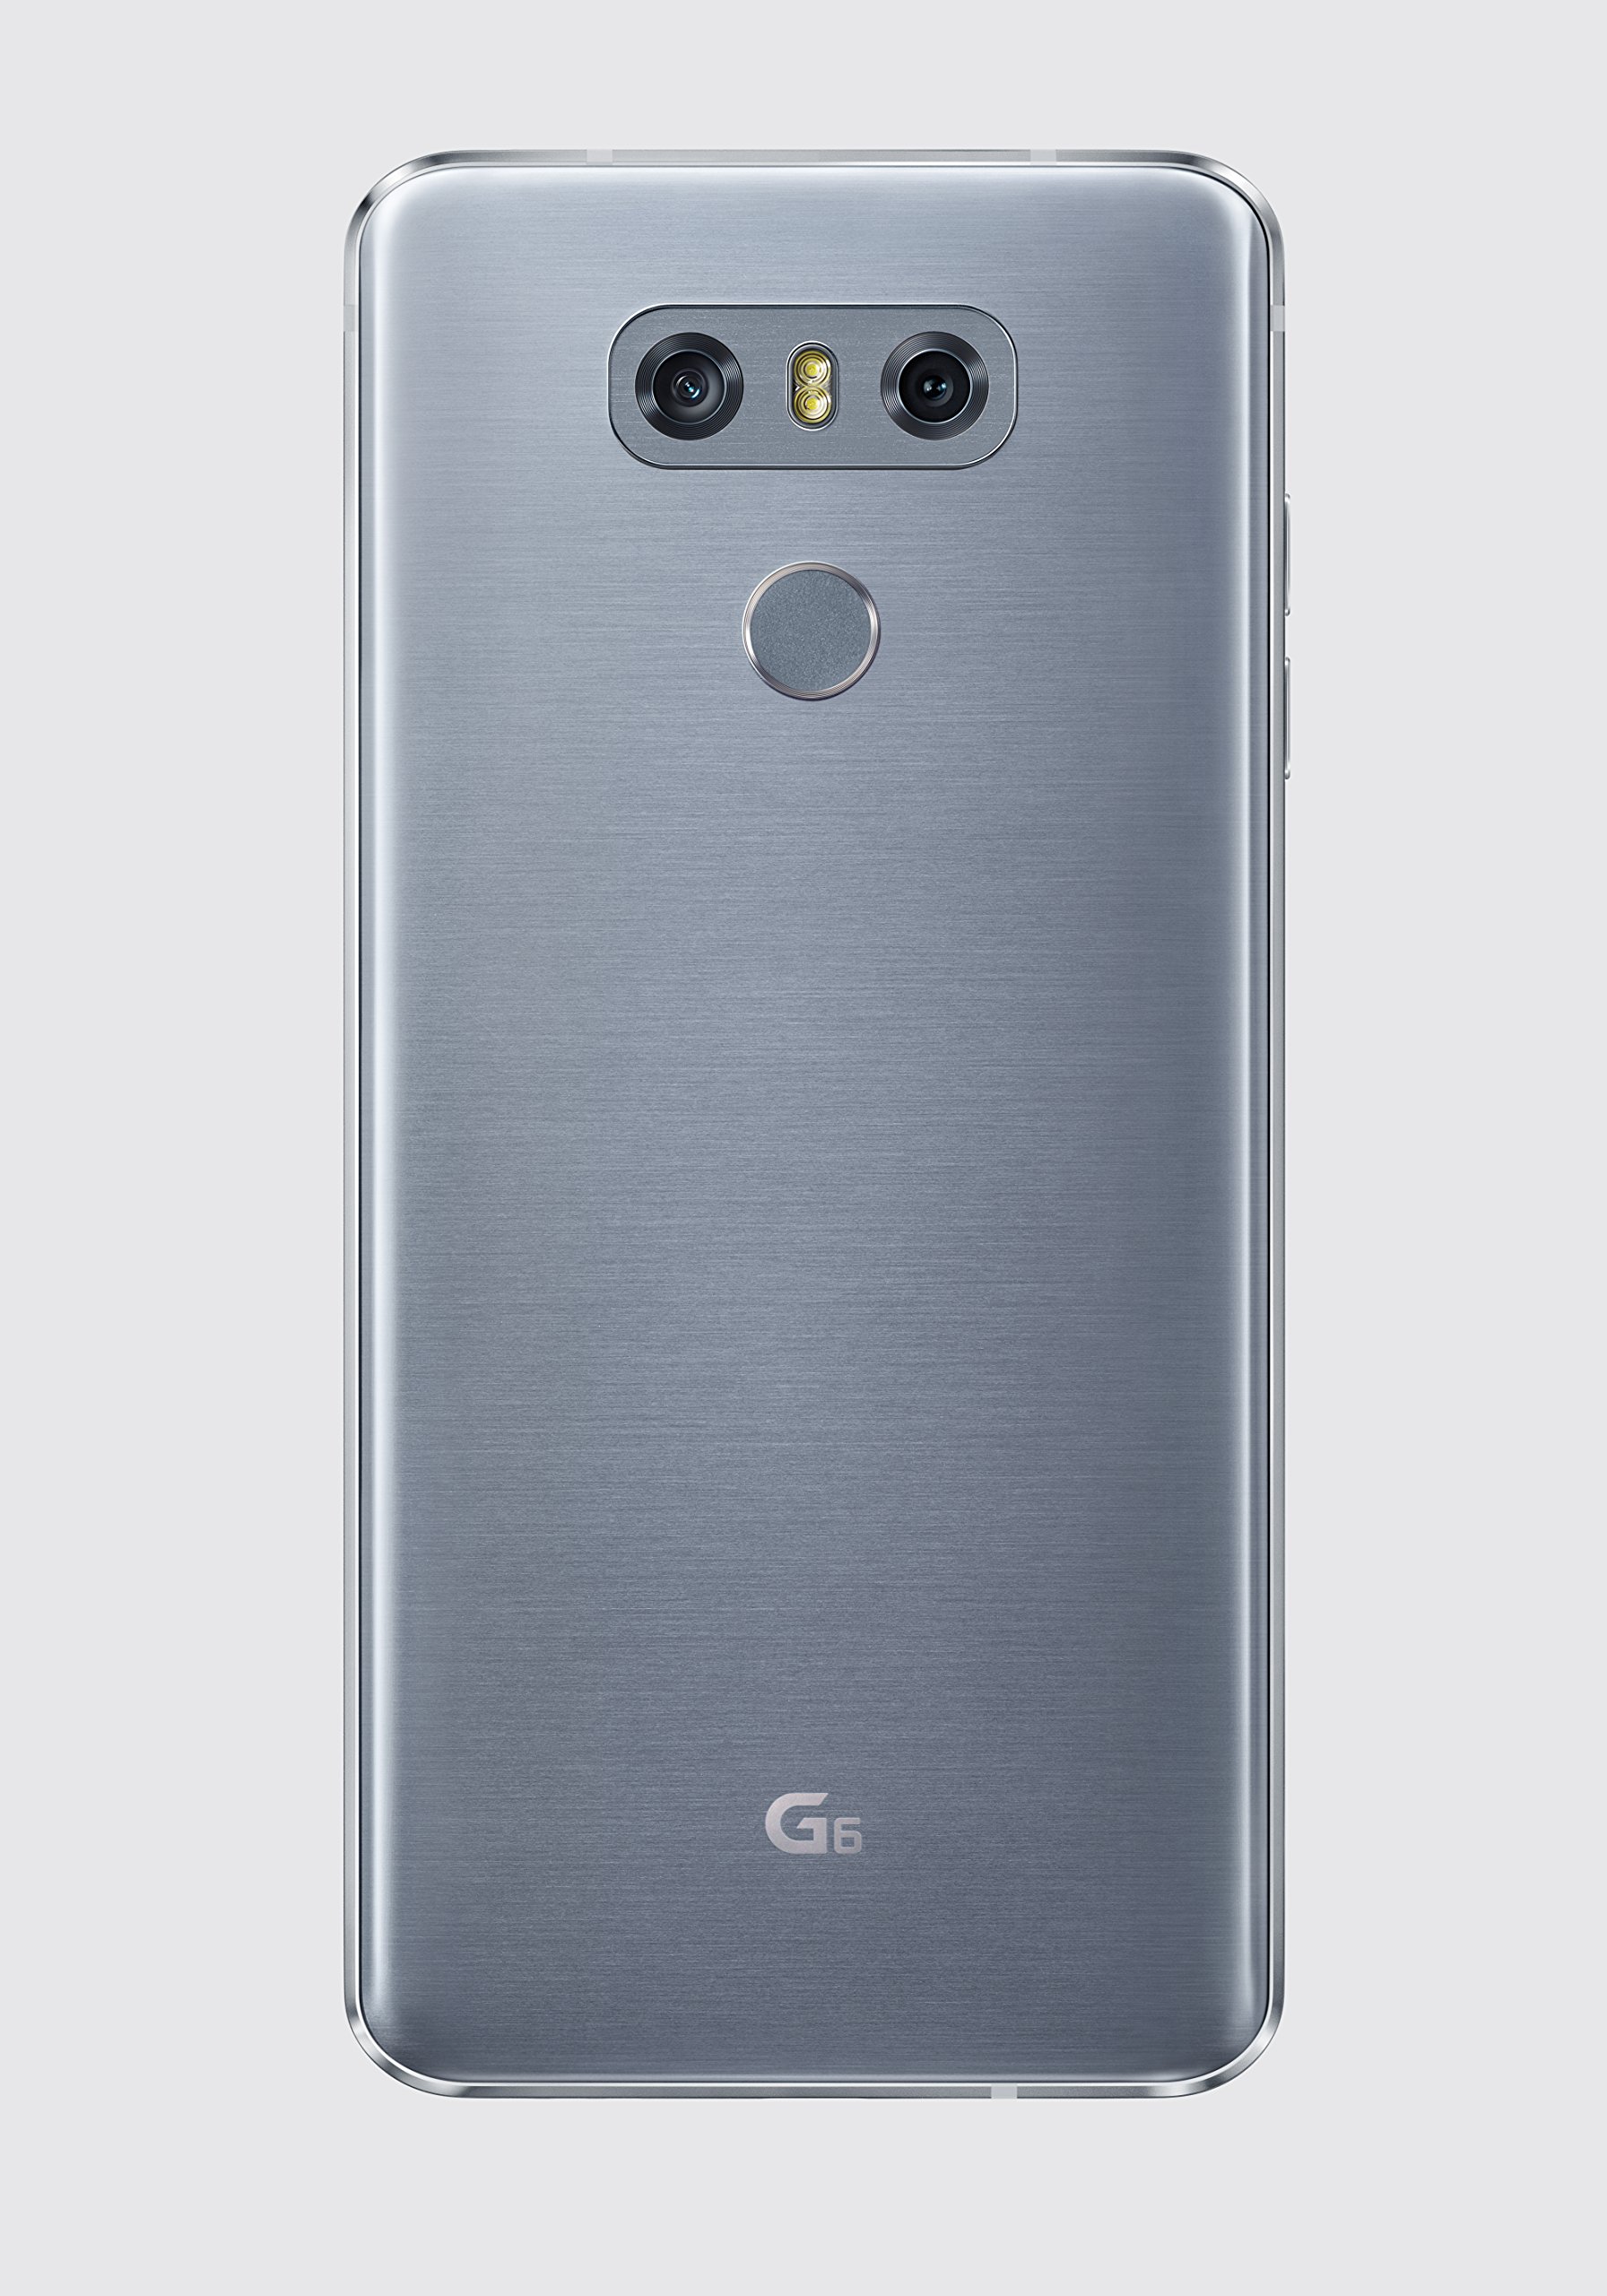 LG G6 H870 Single SIM 32GB - 5.7